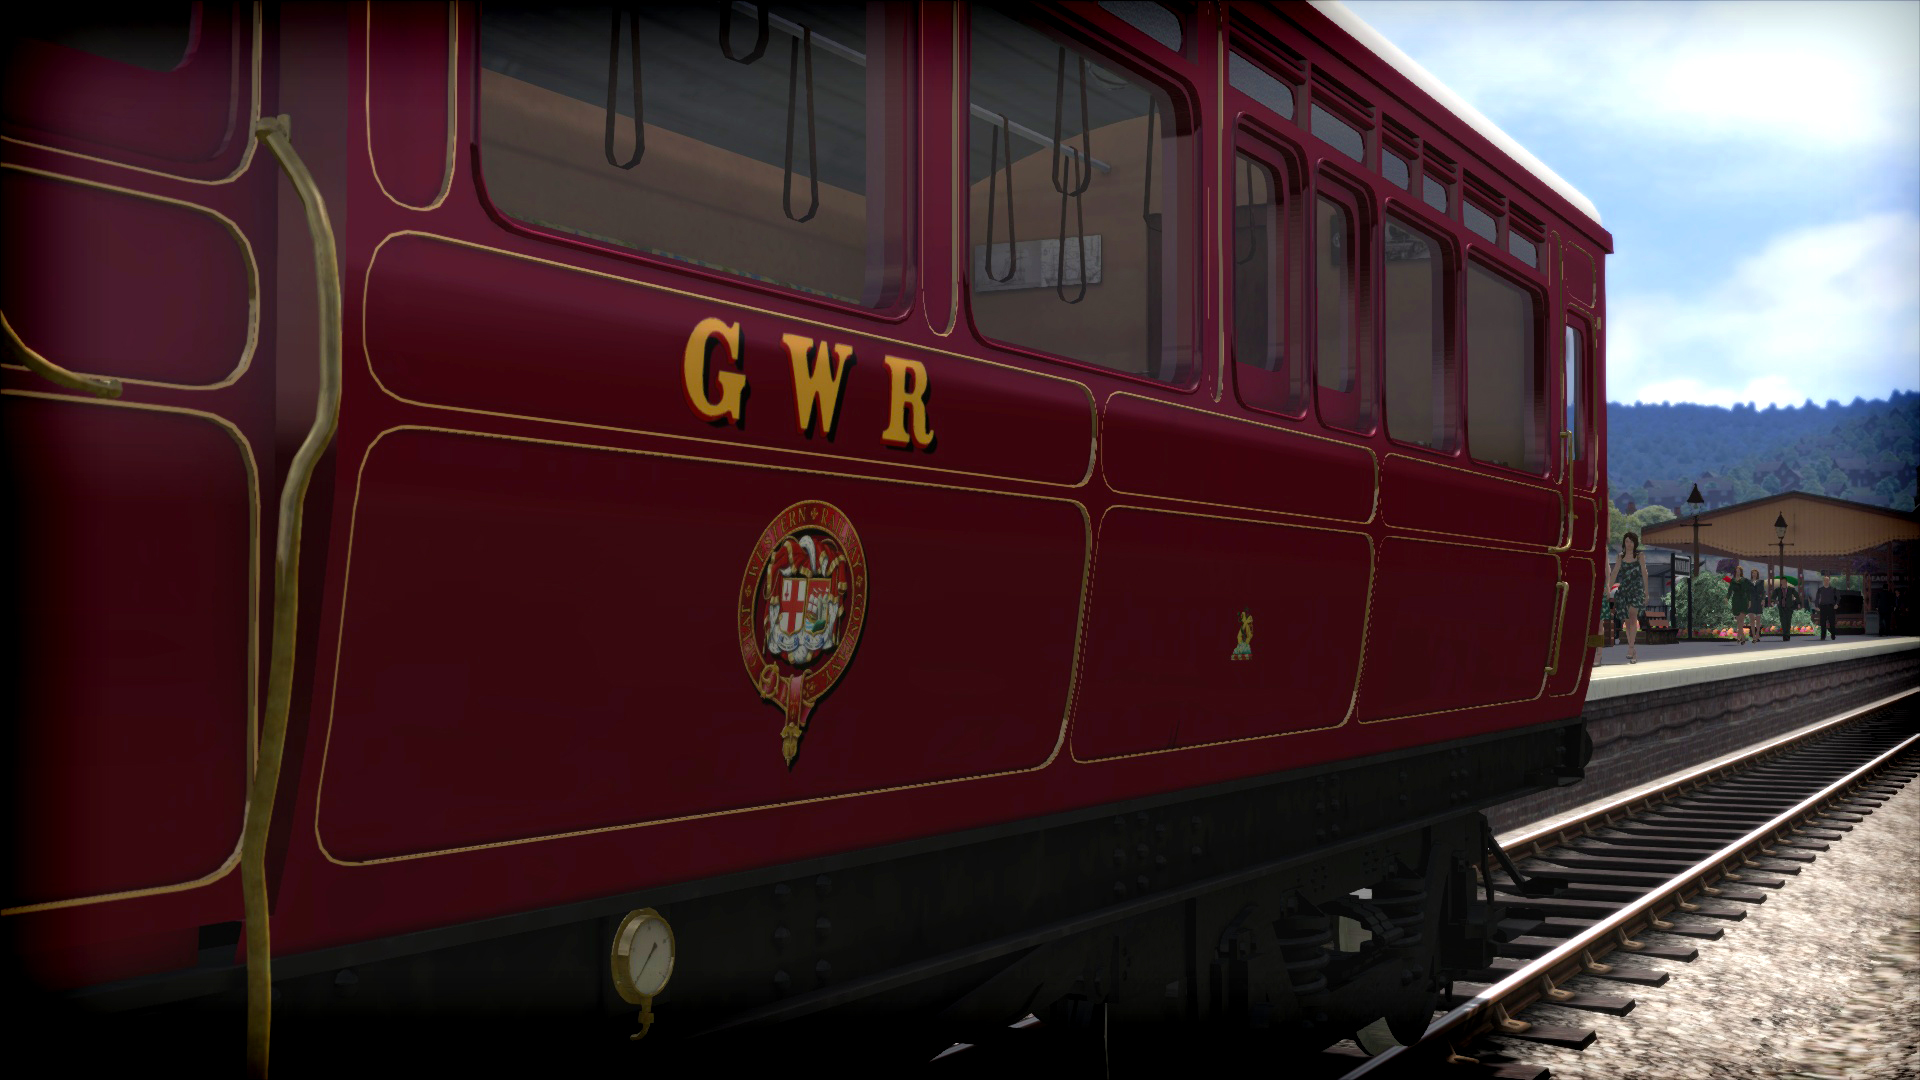 Train Simulator: GWR Steam Railmotor Loco Add-On screenshot